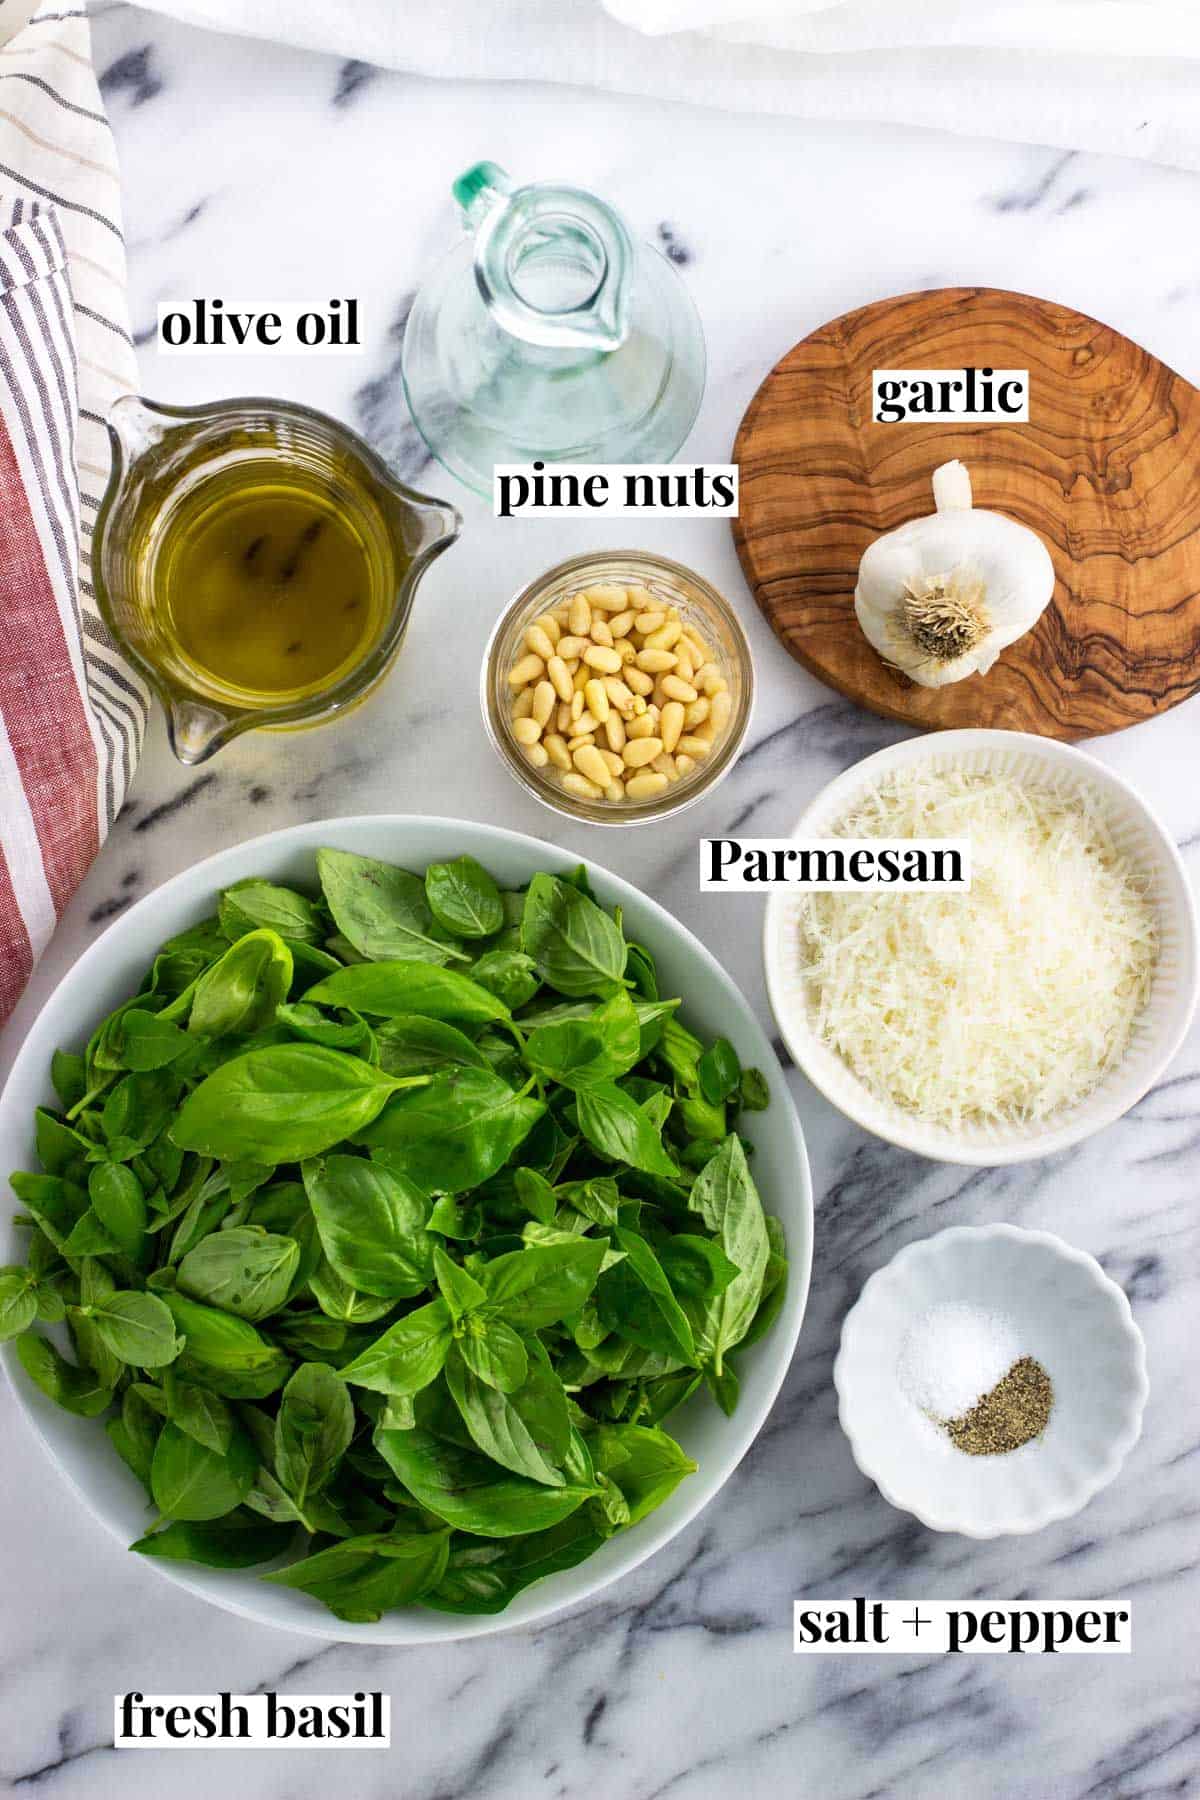 Labeled basil pesto ingredients in separate ingredients.